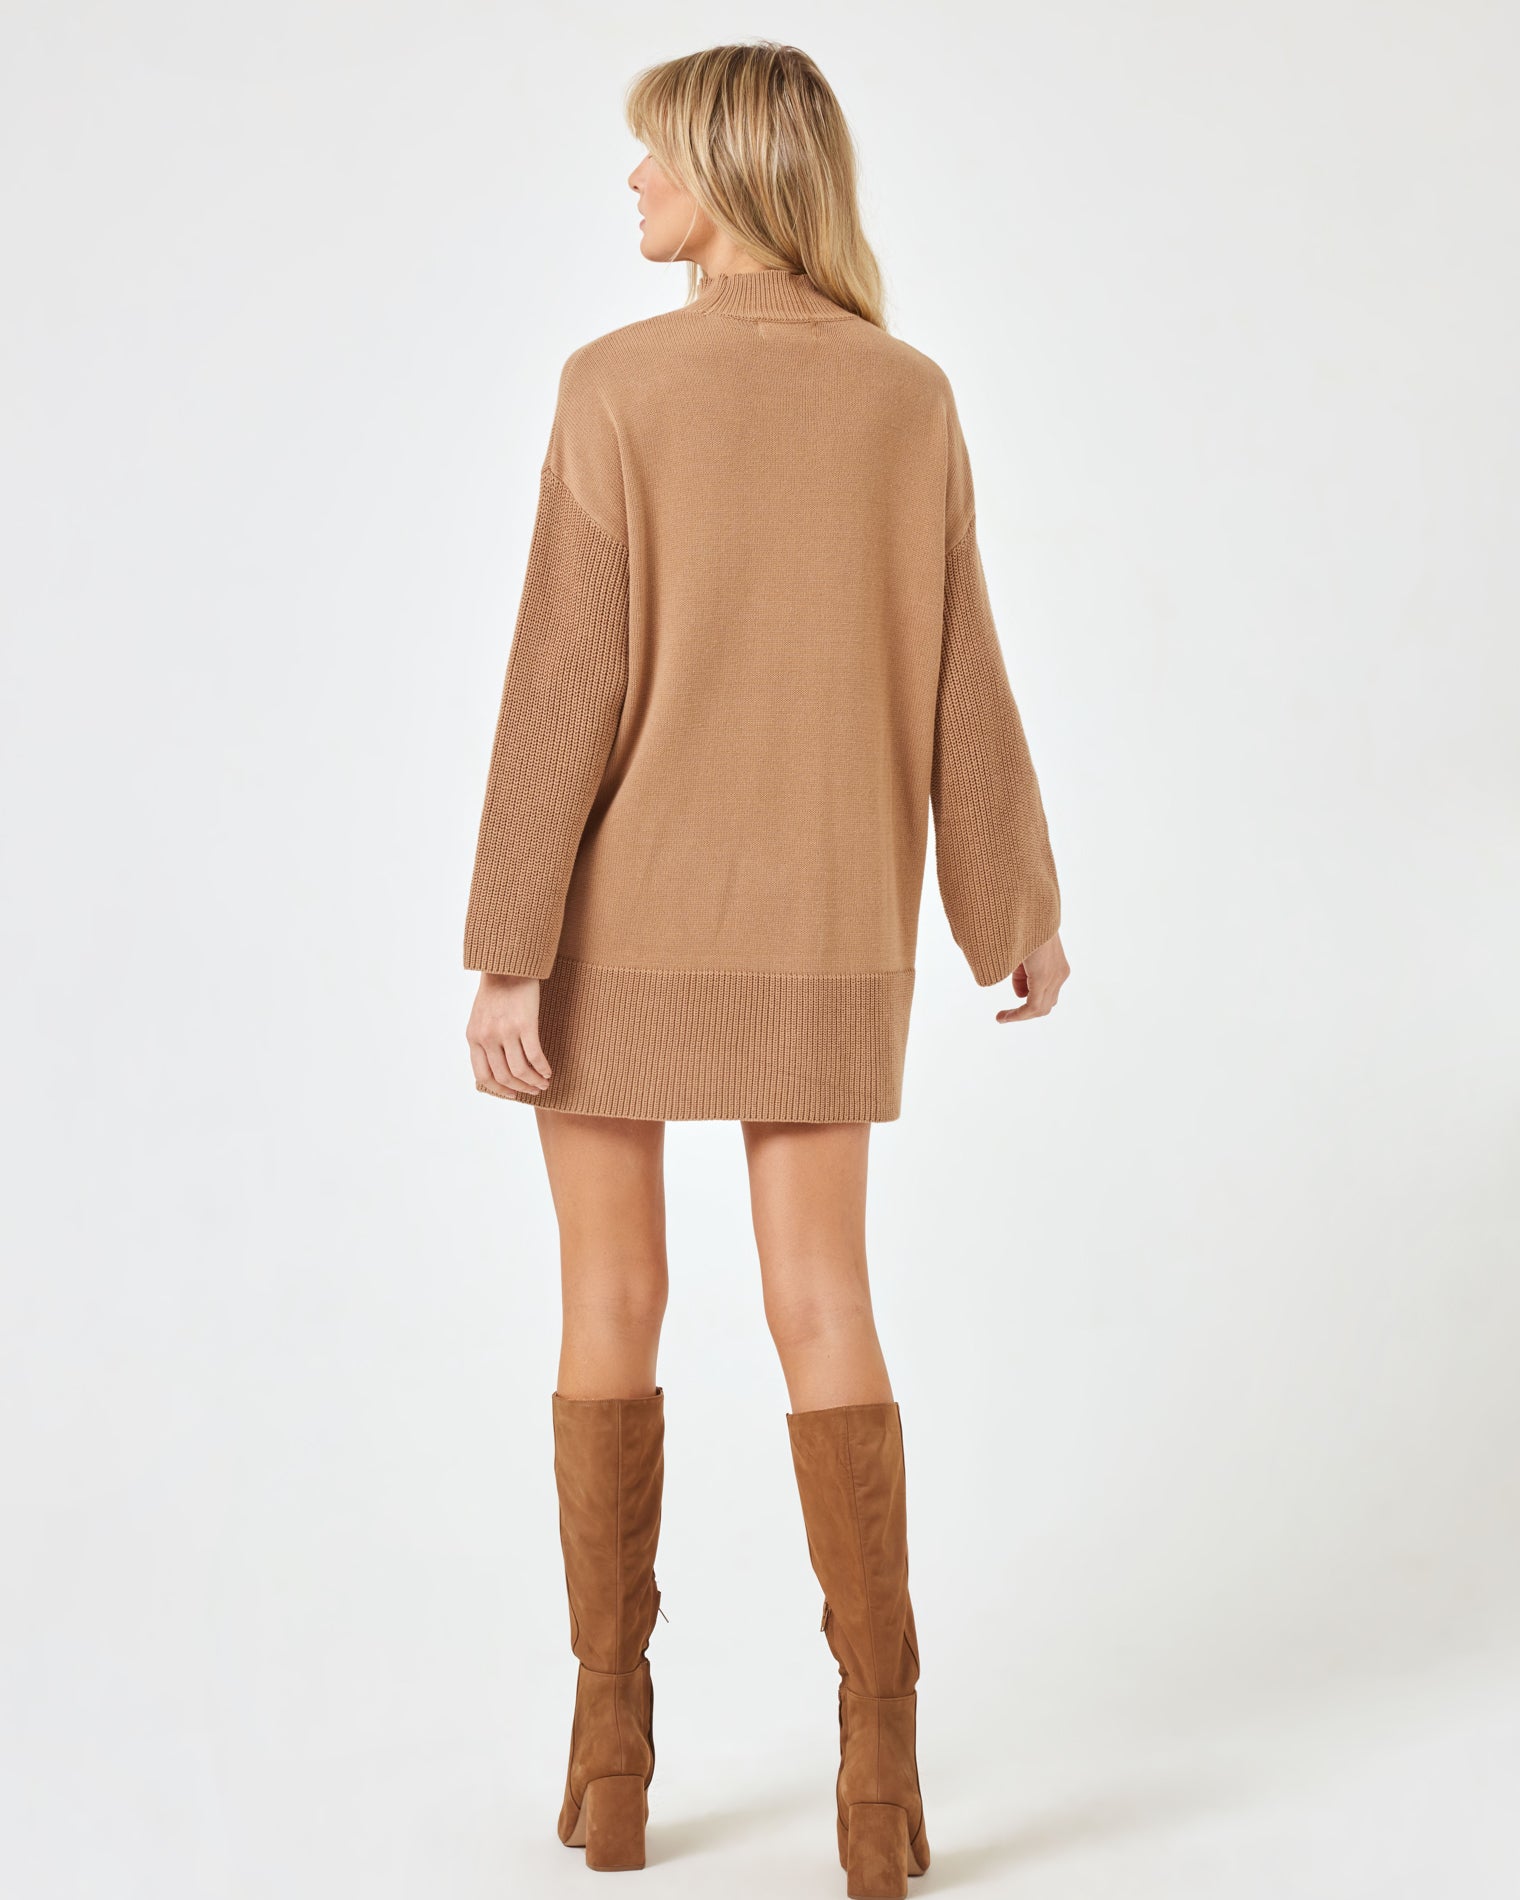 Lacy Dress - Camel Camel | Model: Lura (size: S)